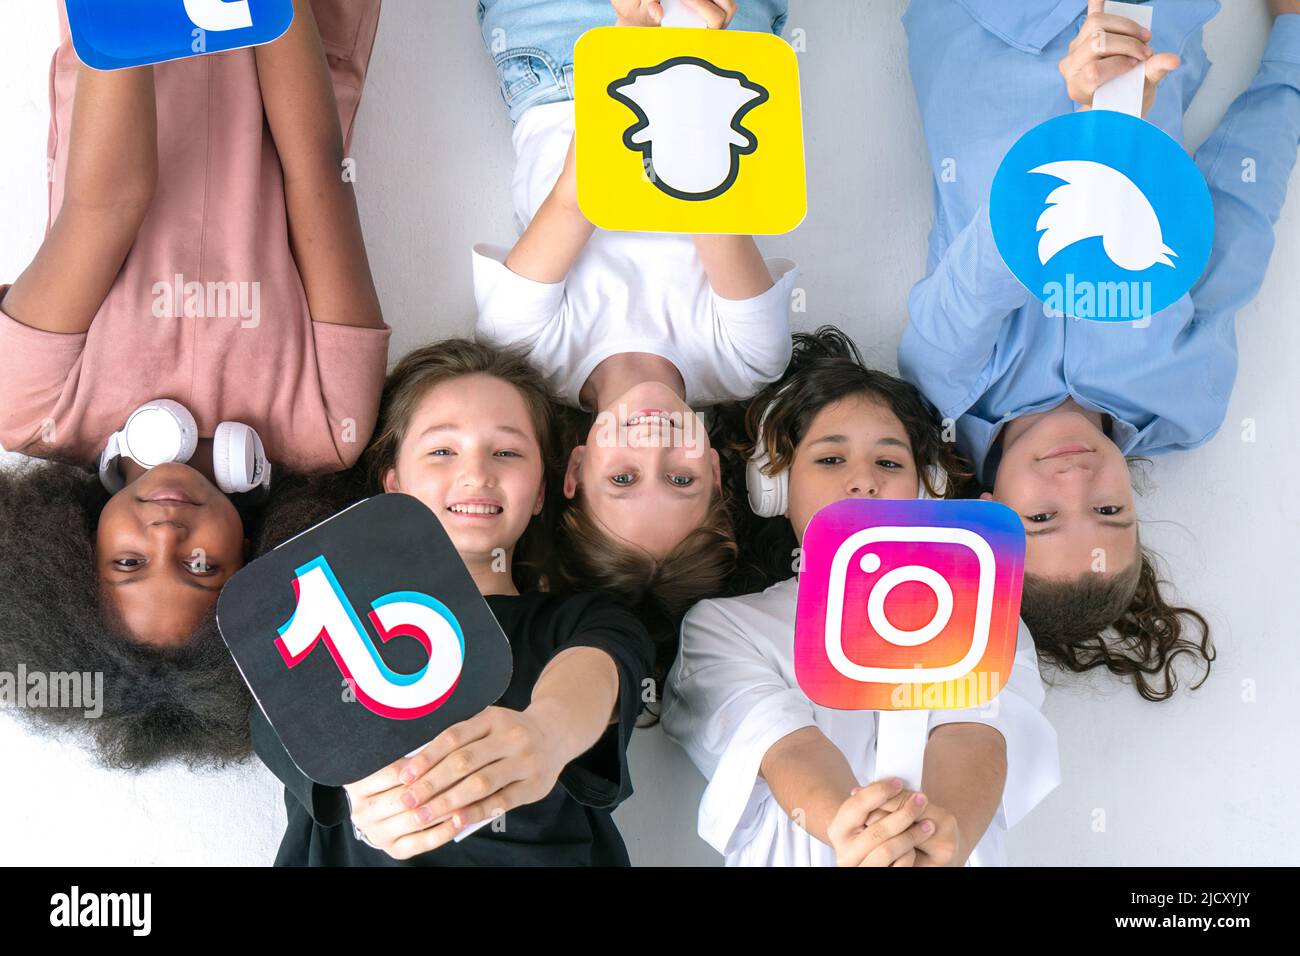 Multirassische Jugendliche Freunde Hände halten Social-Media-Symbole in ihren Händen. Jugendliche süchtig nach neuen Technologie-Trends - Konzept der Jugend, Technologie Stockfoto